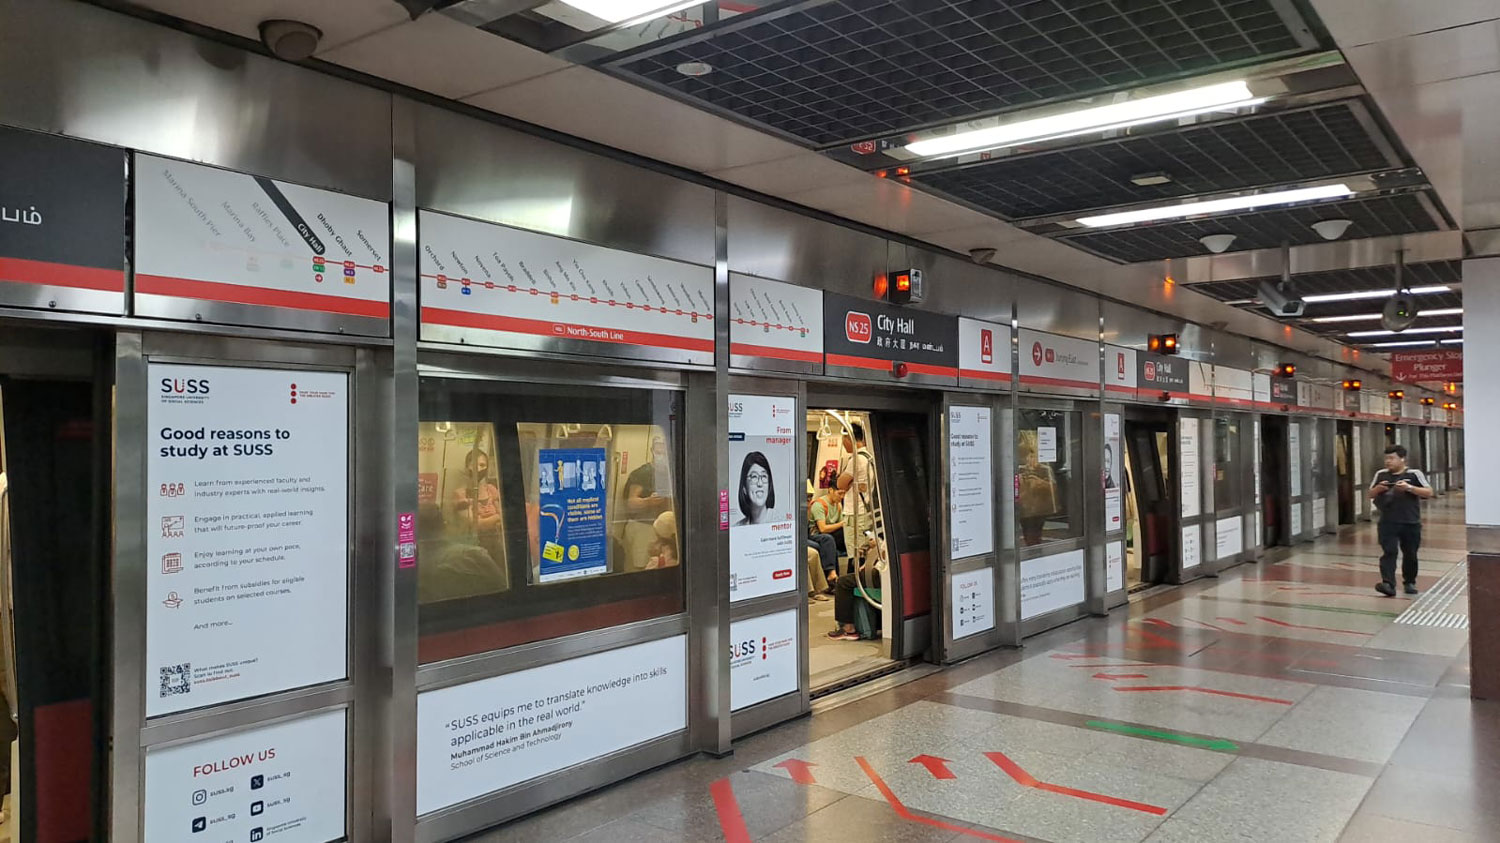 Le métro de Hong Kong (MTR) a joué un rôle important dans l'évolution de l'infrastructure de cette ville intelligente.